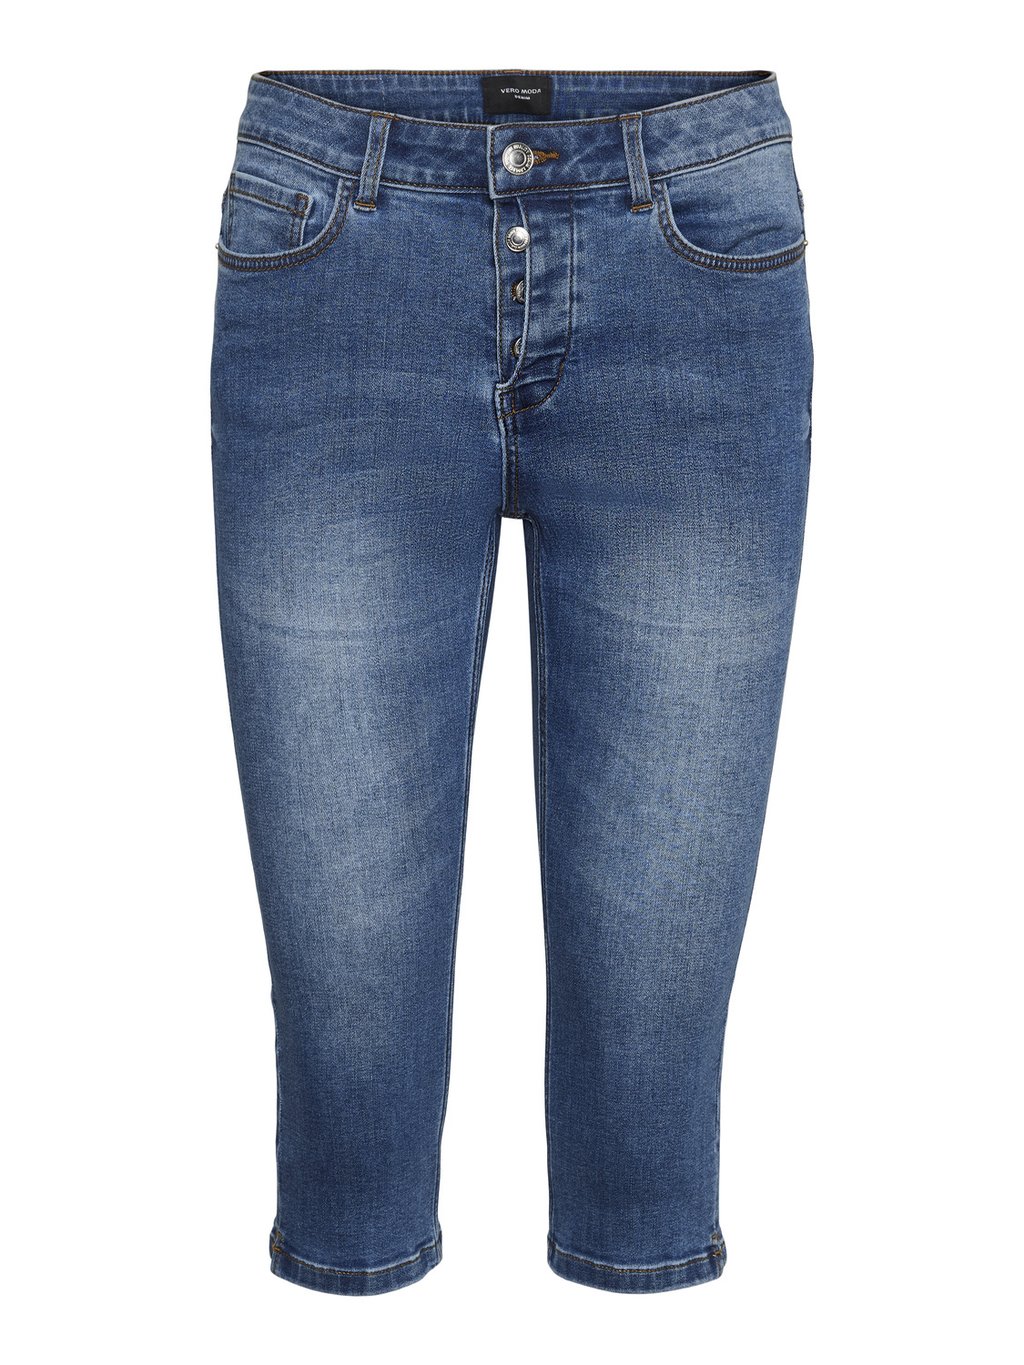 Джинсовые шорты Vero Moda голубые джинсовые шорты mom vero moda